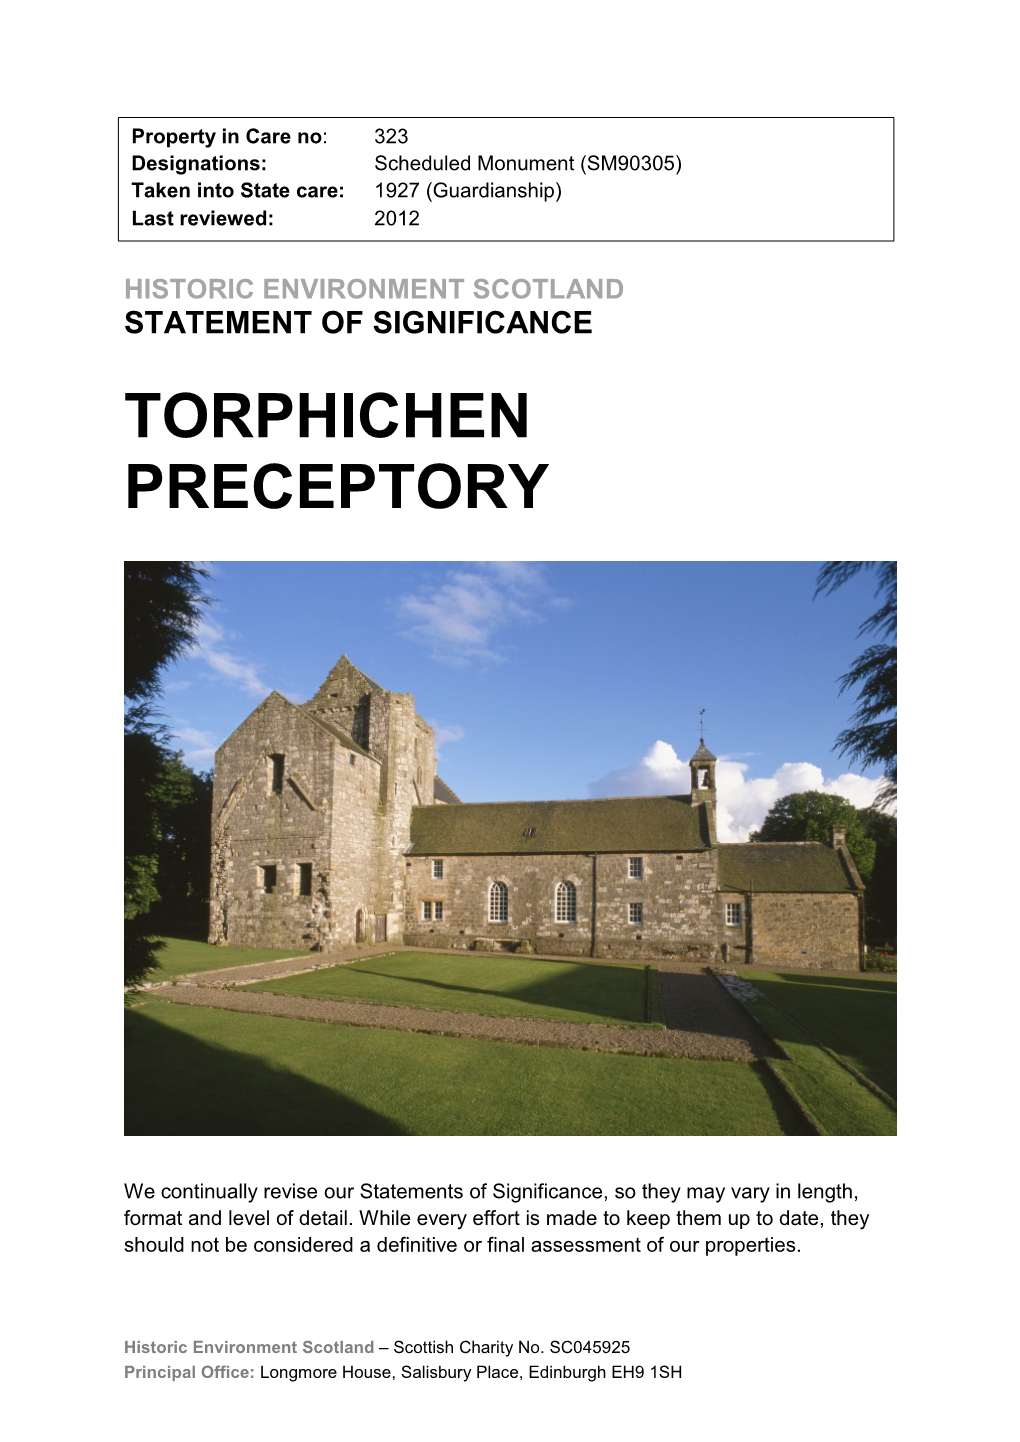 Torphichen Preceptory